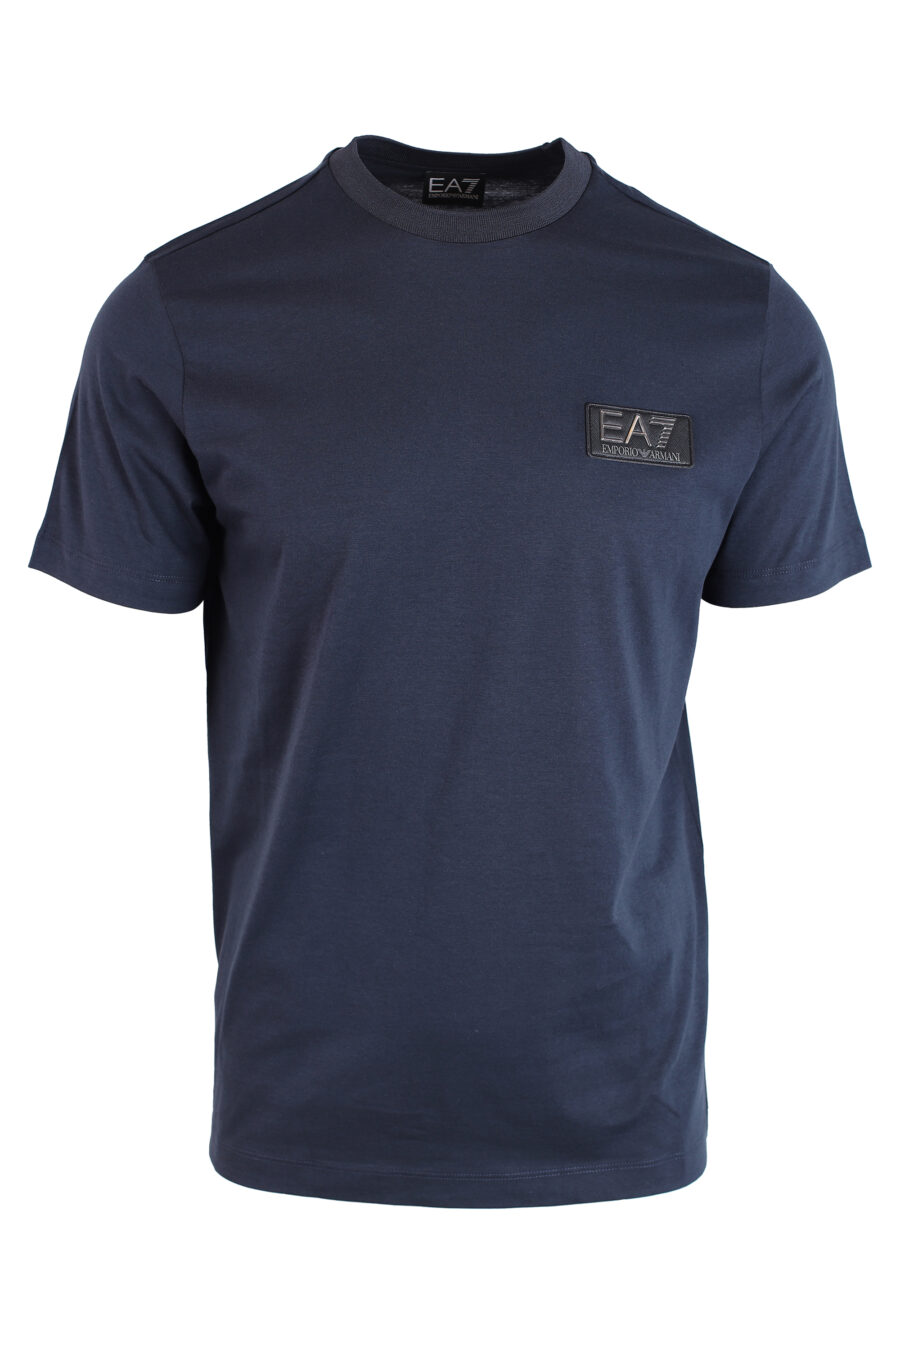 T-shirt azul escura com mini logótipo em dourado - IMG 3230